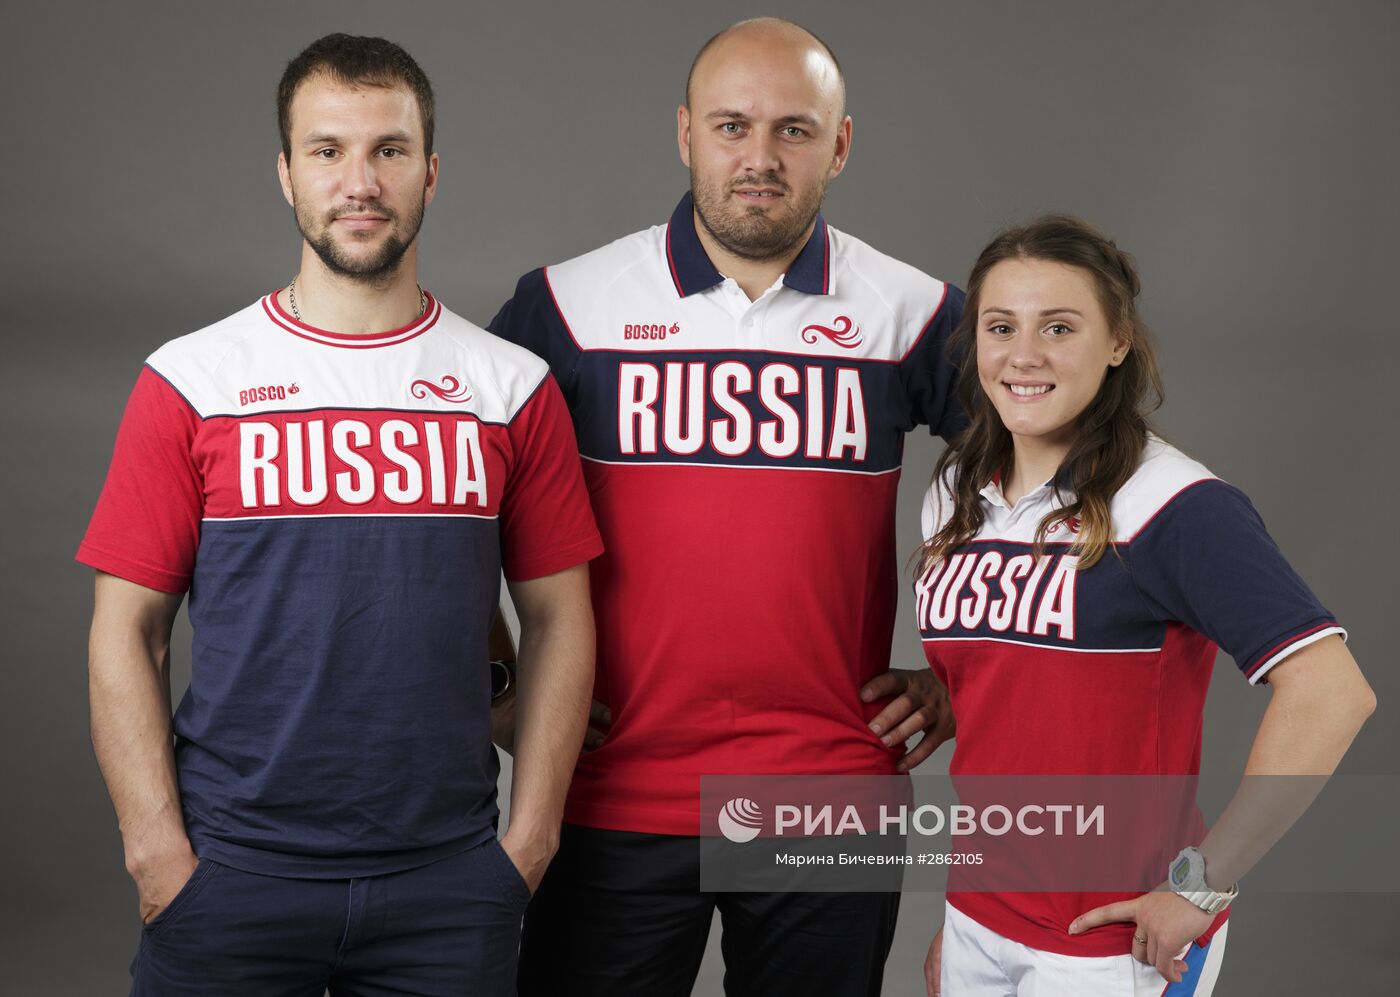 Члены олимпийской сборной России по велоспорту в дисциплине BMX